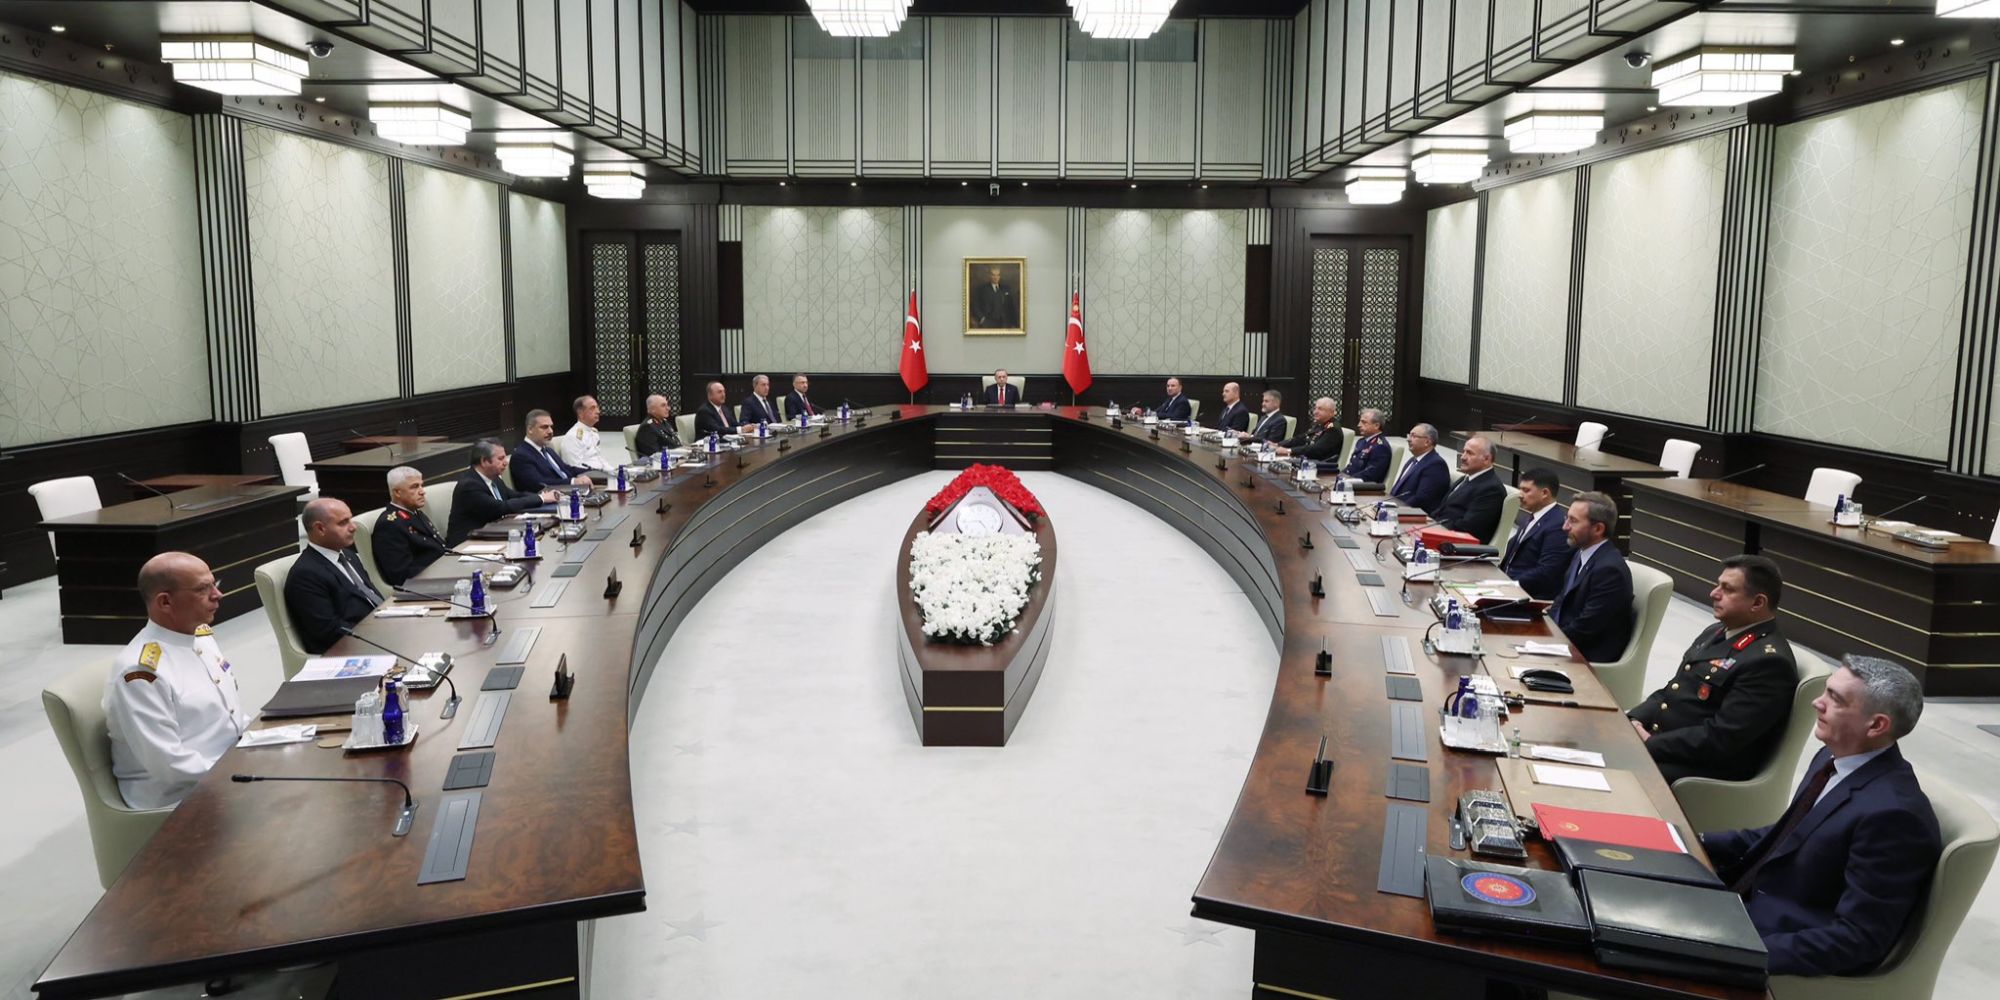 Ο Ρετζέπ Ταγίπ Ερντογάν στο Συμβούλιο Ασφαλείας στην Τουρκία 28-9